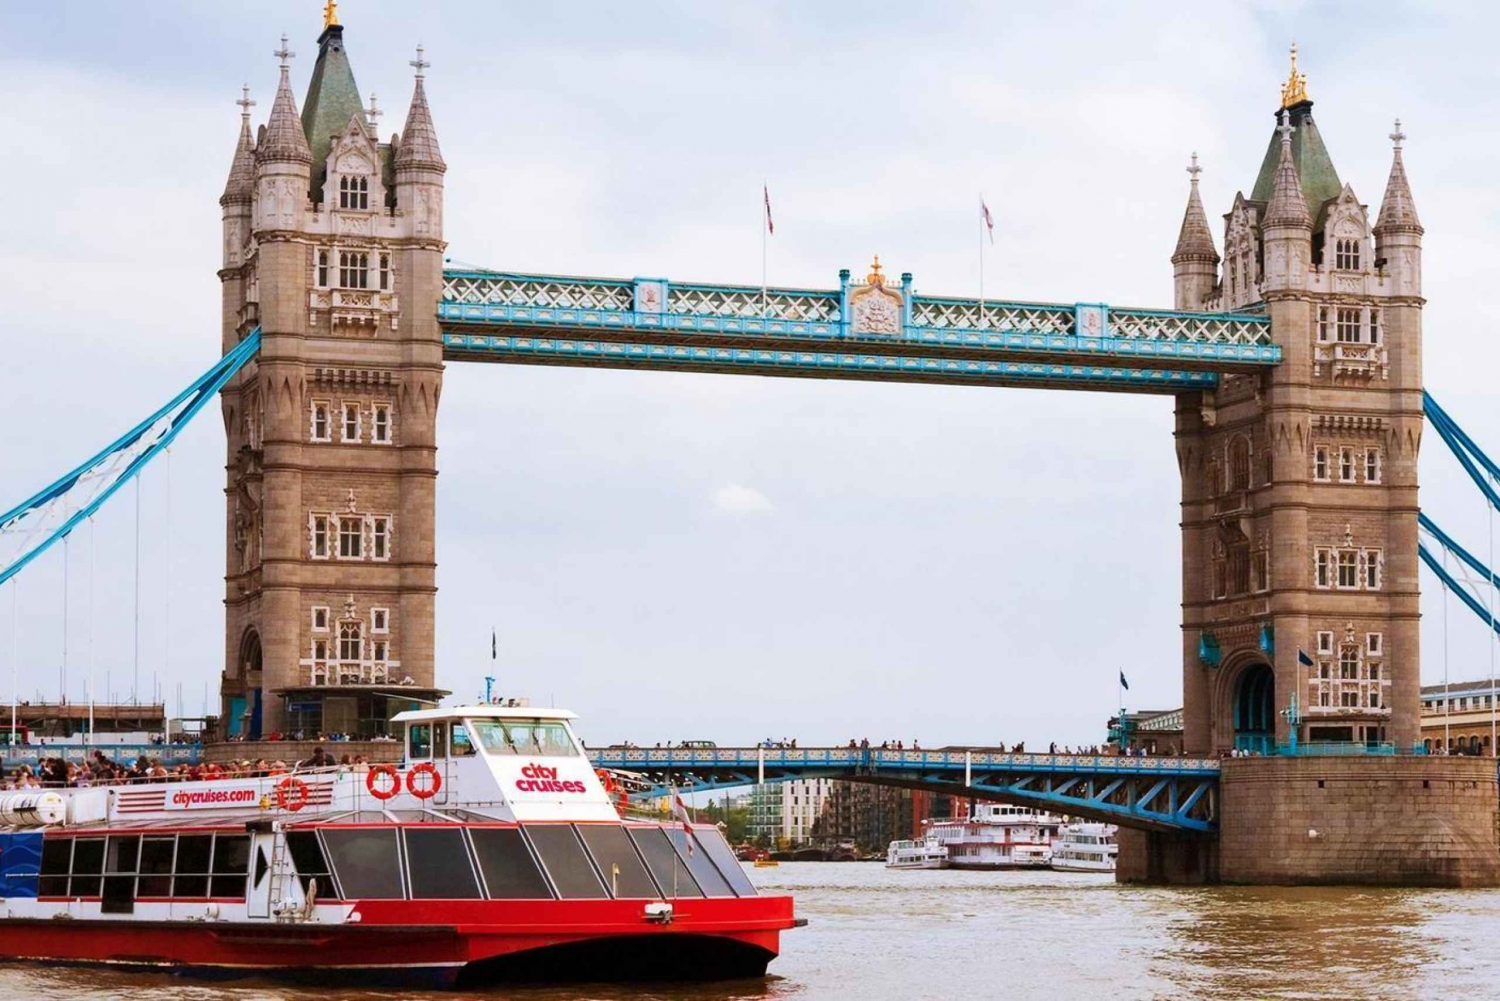 Londres: Cruzeiro guiado pelo rio Tâmisa e passeio de 3 horas por Westminster